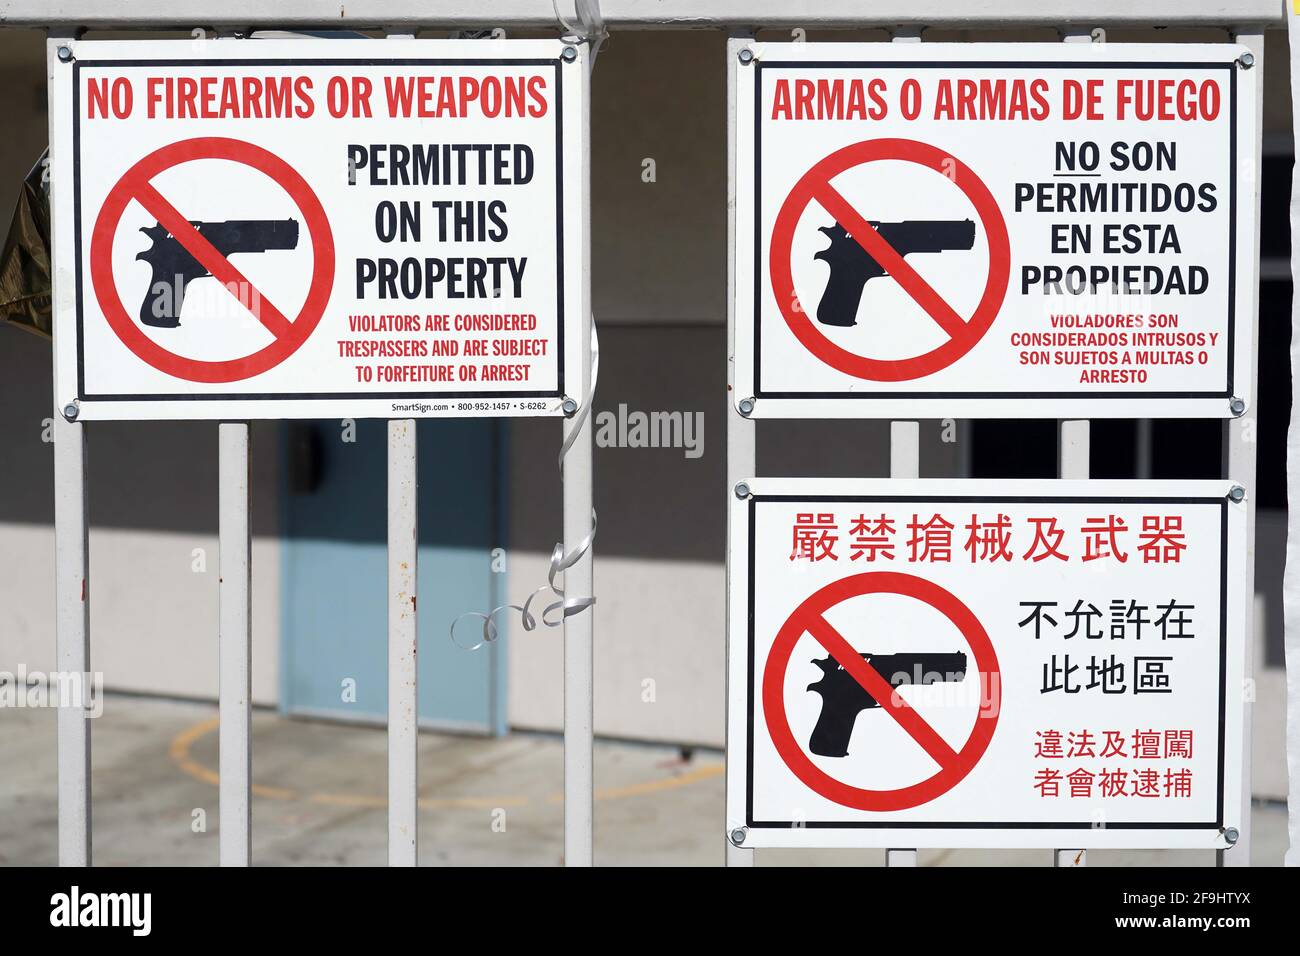 Aucune arme à feu ou arme n'est autorisée sur les panneaux de propriété en anglais, espagnol et chinois à l'école élémentaire Brightwood, le dimanche 19 avril 2021, à Monter Banque D'Images